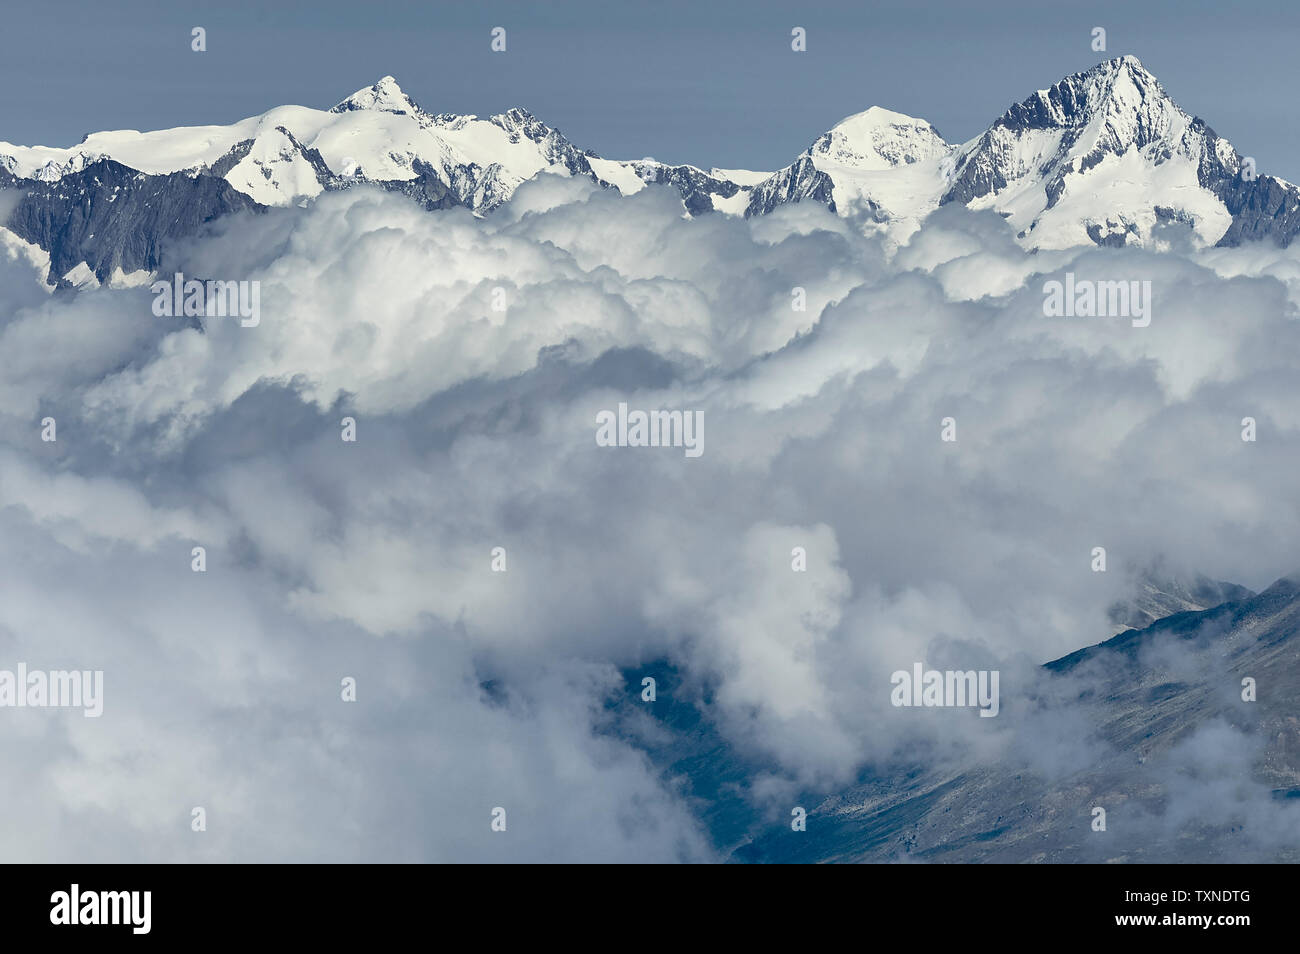 Capa de nubes cerca de la parte superior de la cordillera, Saas-Fee, Valais, Suiza Foto de stock